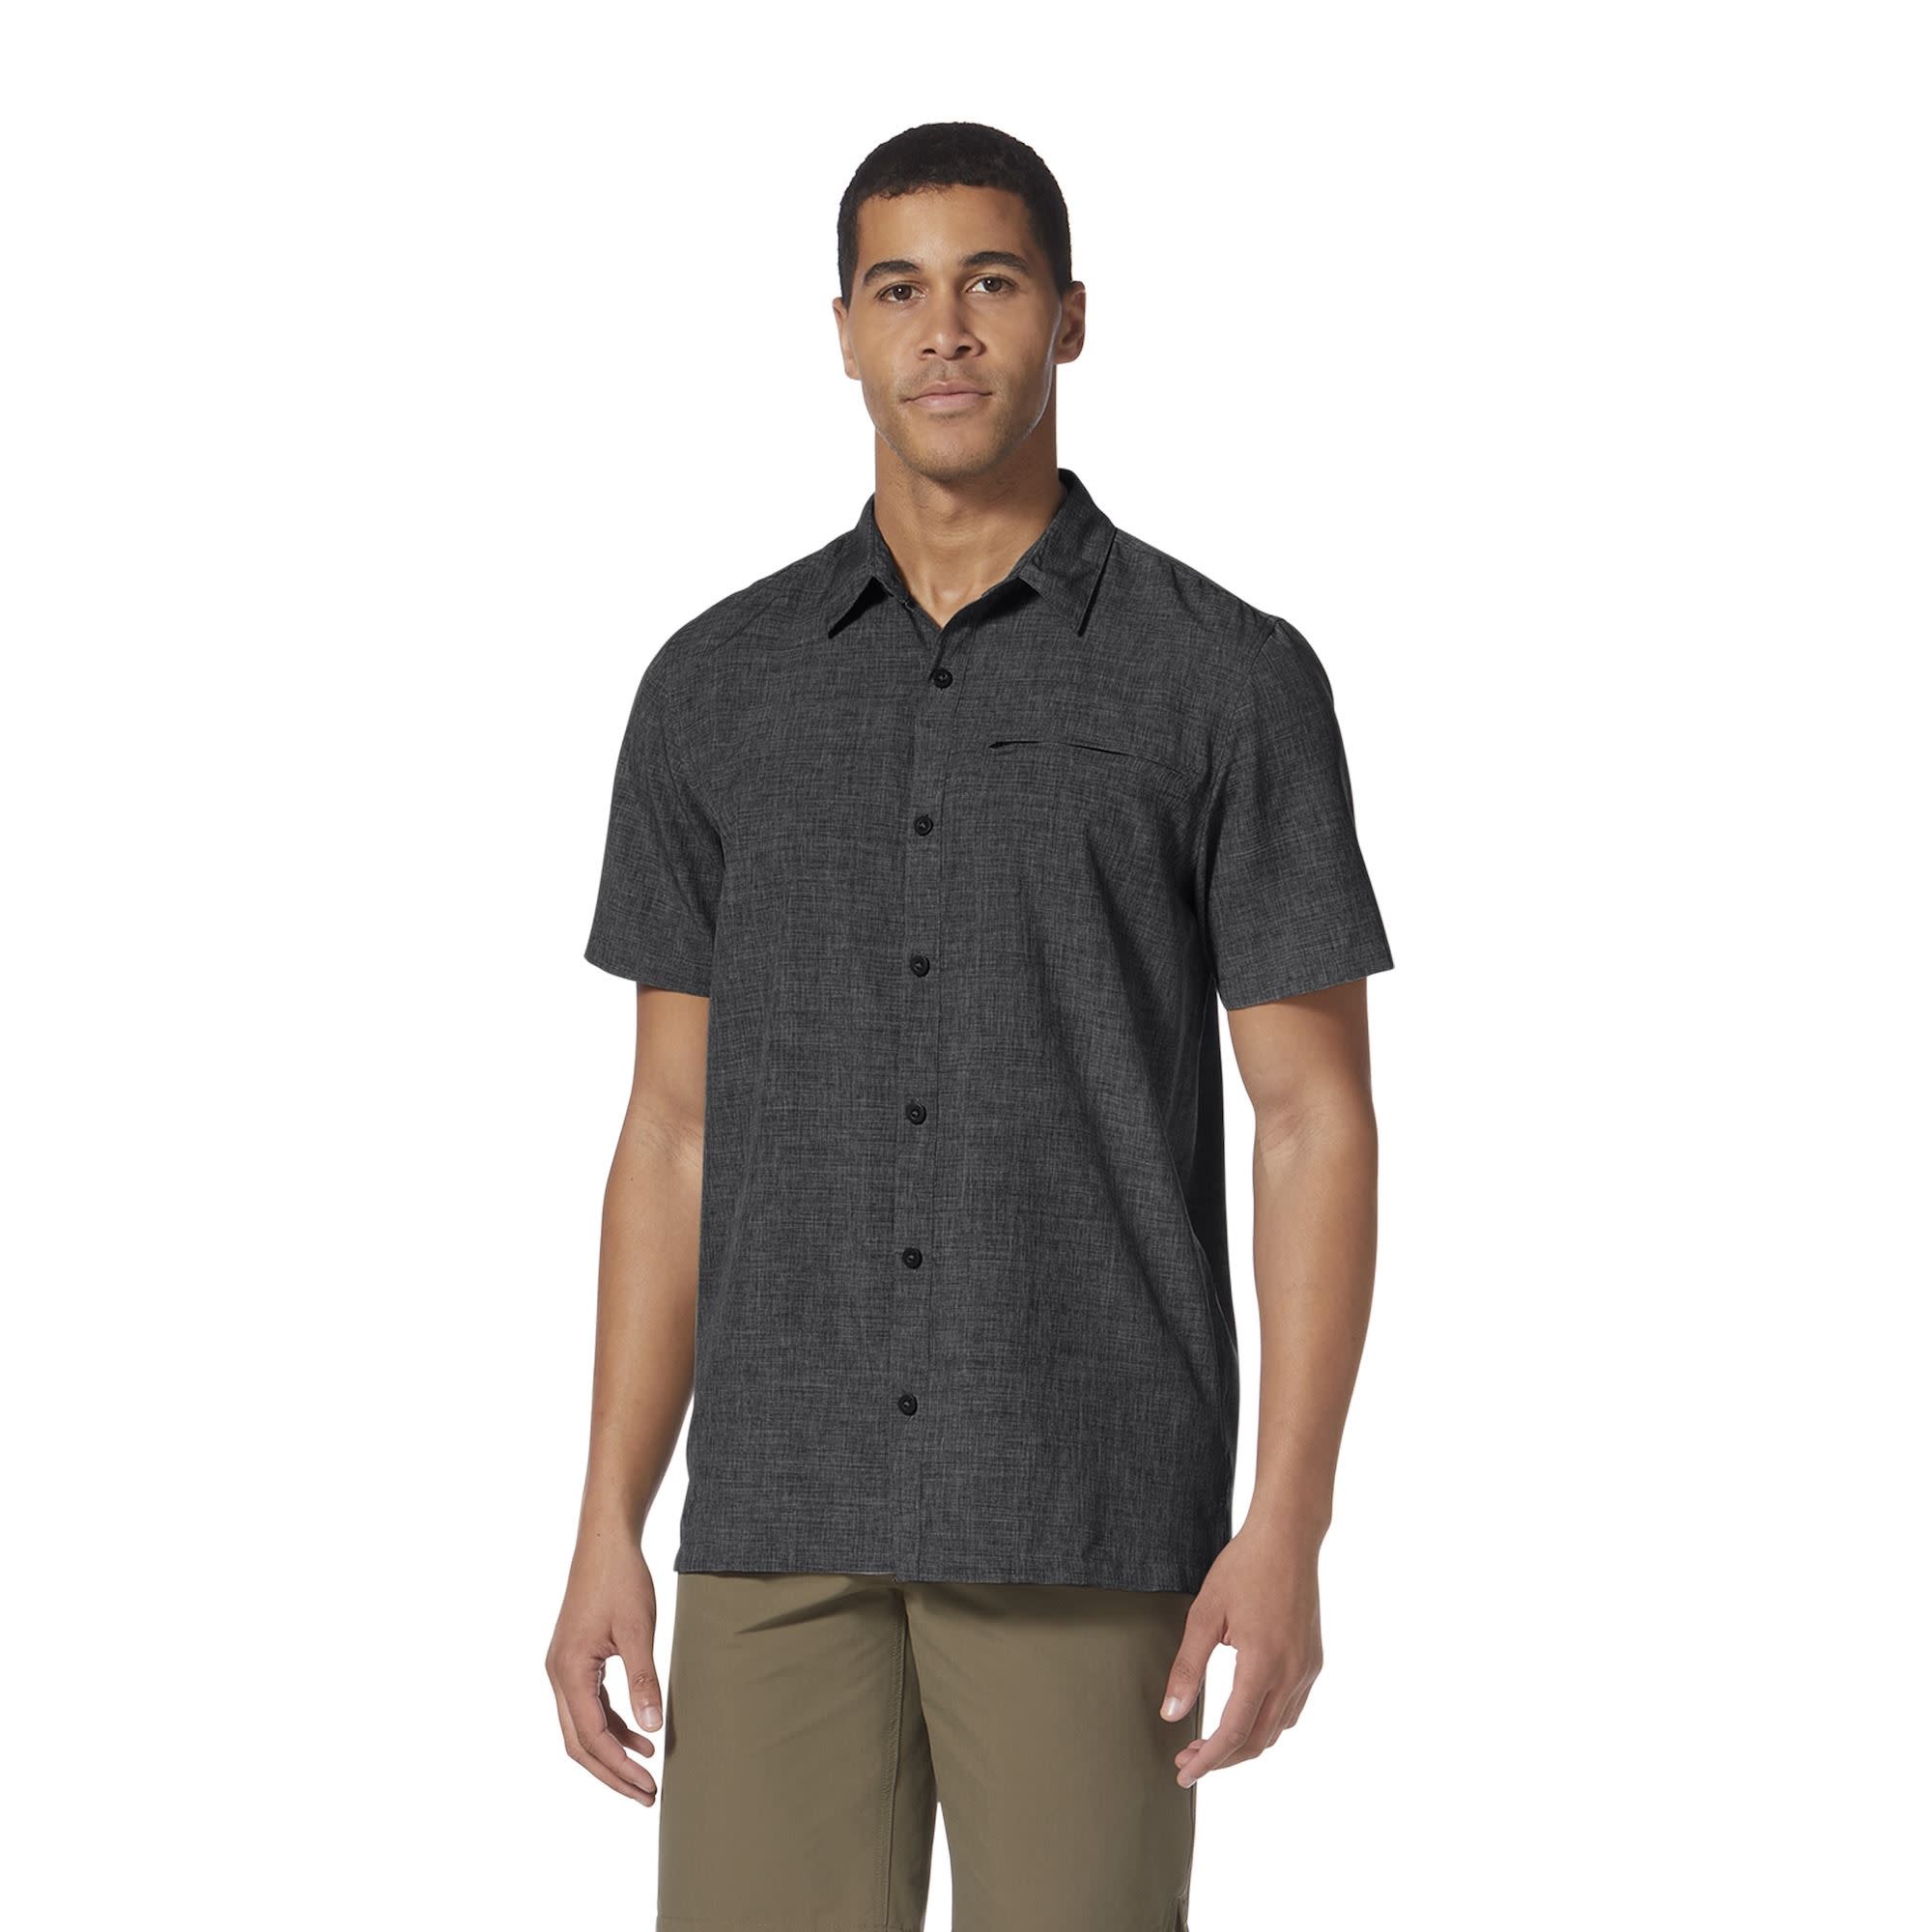 Ike Button-Up Shirt by rofeeak - Men's Short Sleeve Shirts - Afrikrea